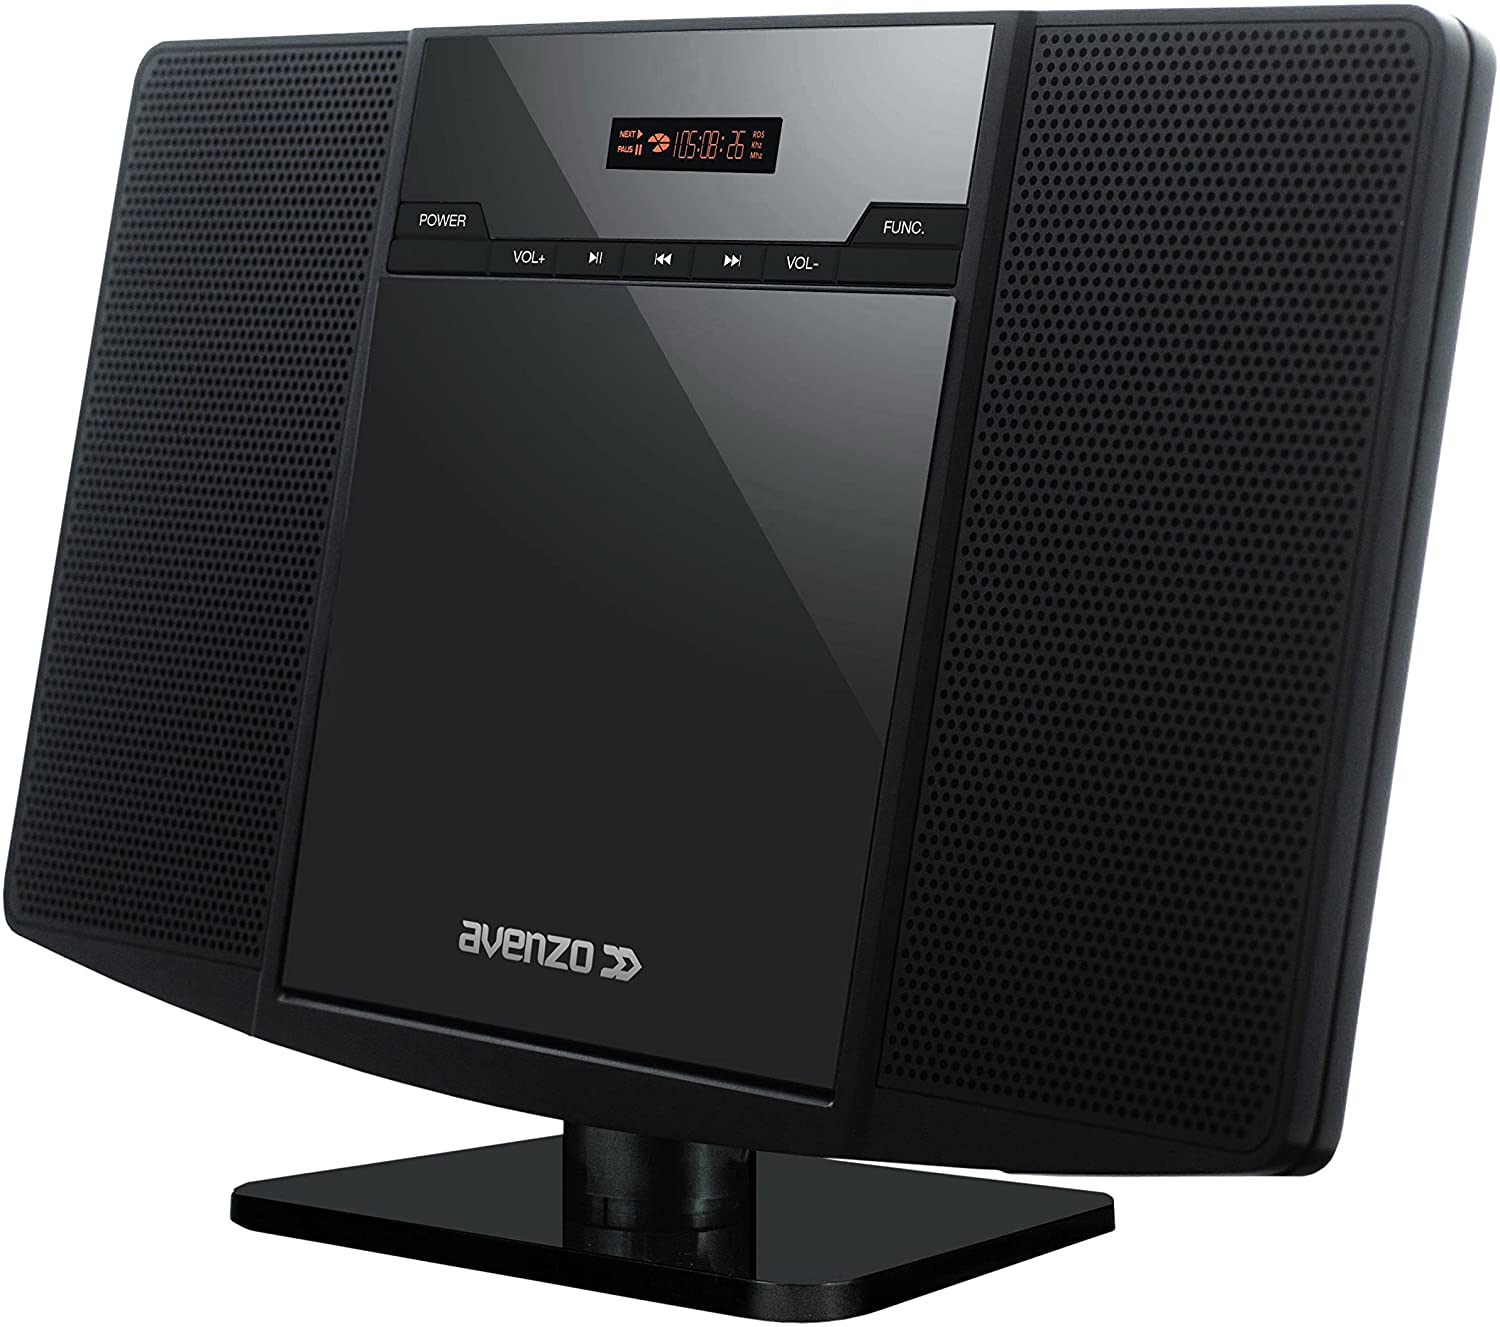 auna Microstar – Minicadena de música Vertical, Reproductor de CD,  Bluetooth, Altavoces estéreo, USB, Pantalla LCD, iluminación LED, Vertical  o en